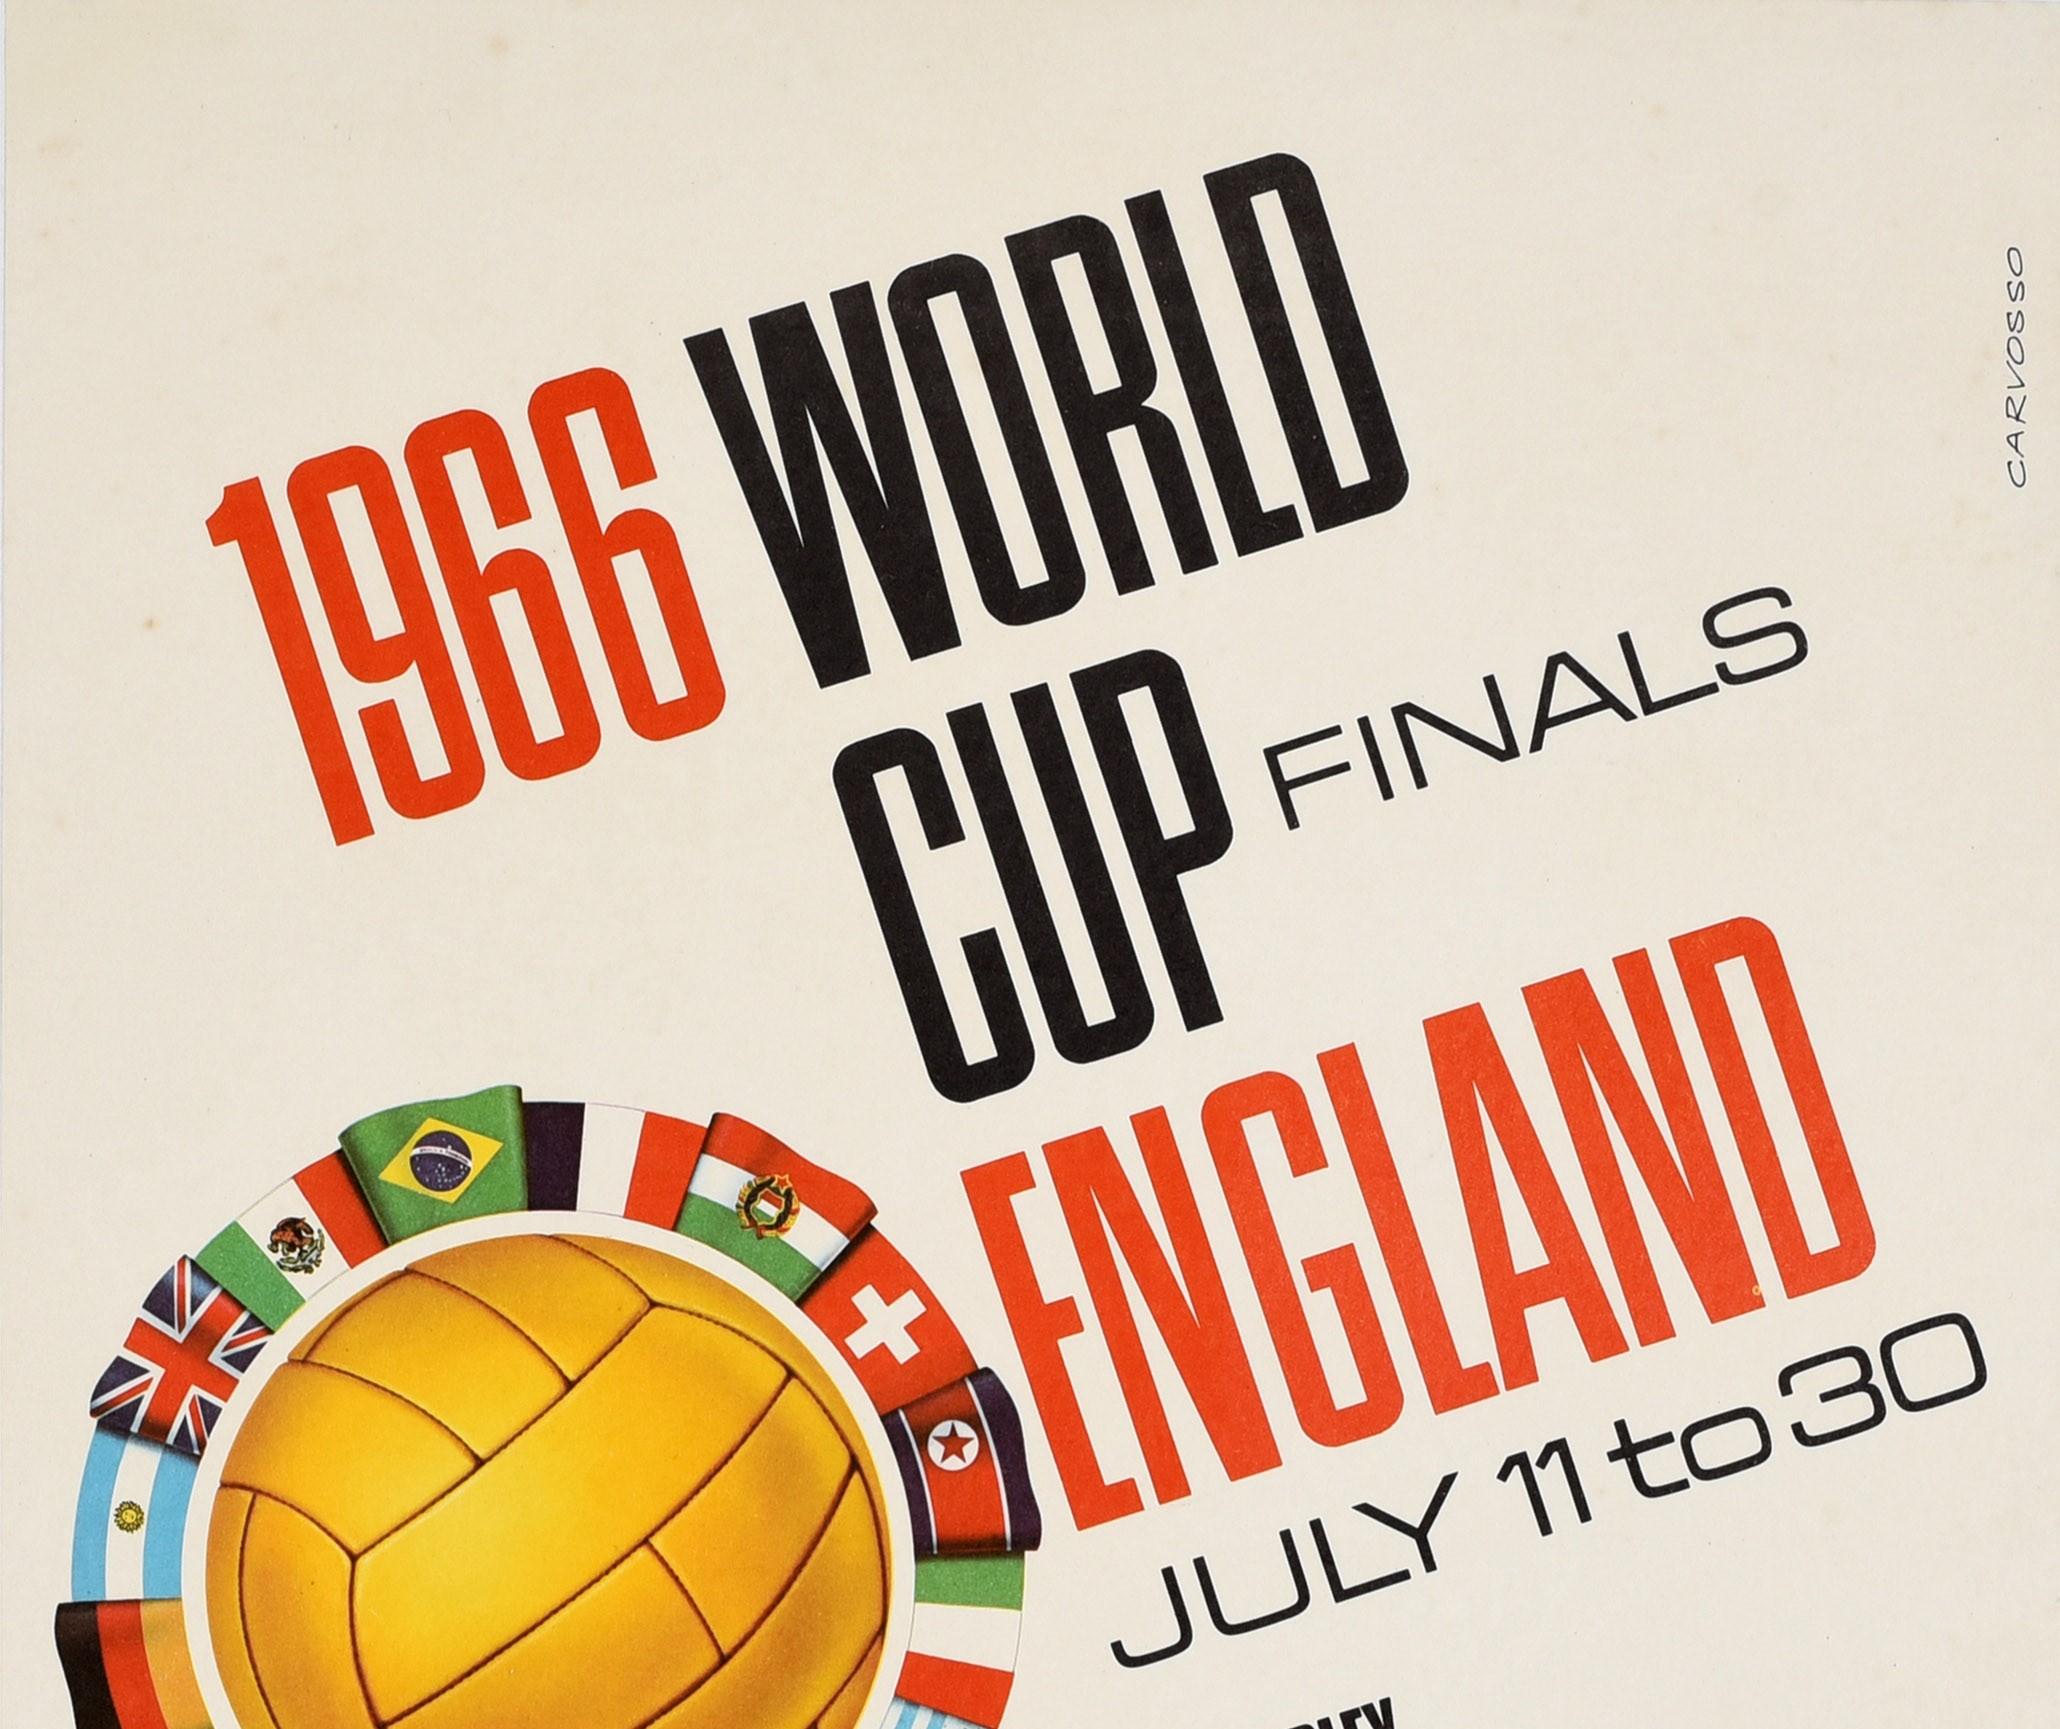 Affiche publicitaire originale pour la finale de la Coupe du monde 1966 qui s'est déroulée en Angleterre du 11 au 30 juillet dans les stades de Wembley Everton Sheffield Sunderland Aston Villa Manchester Middlesbrough et Vintage City. L'affiche